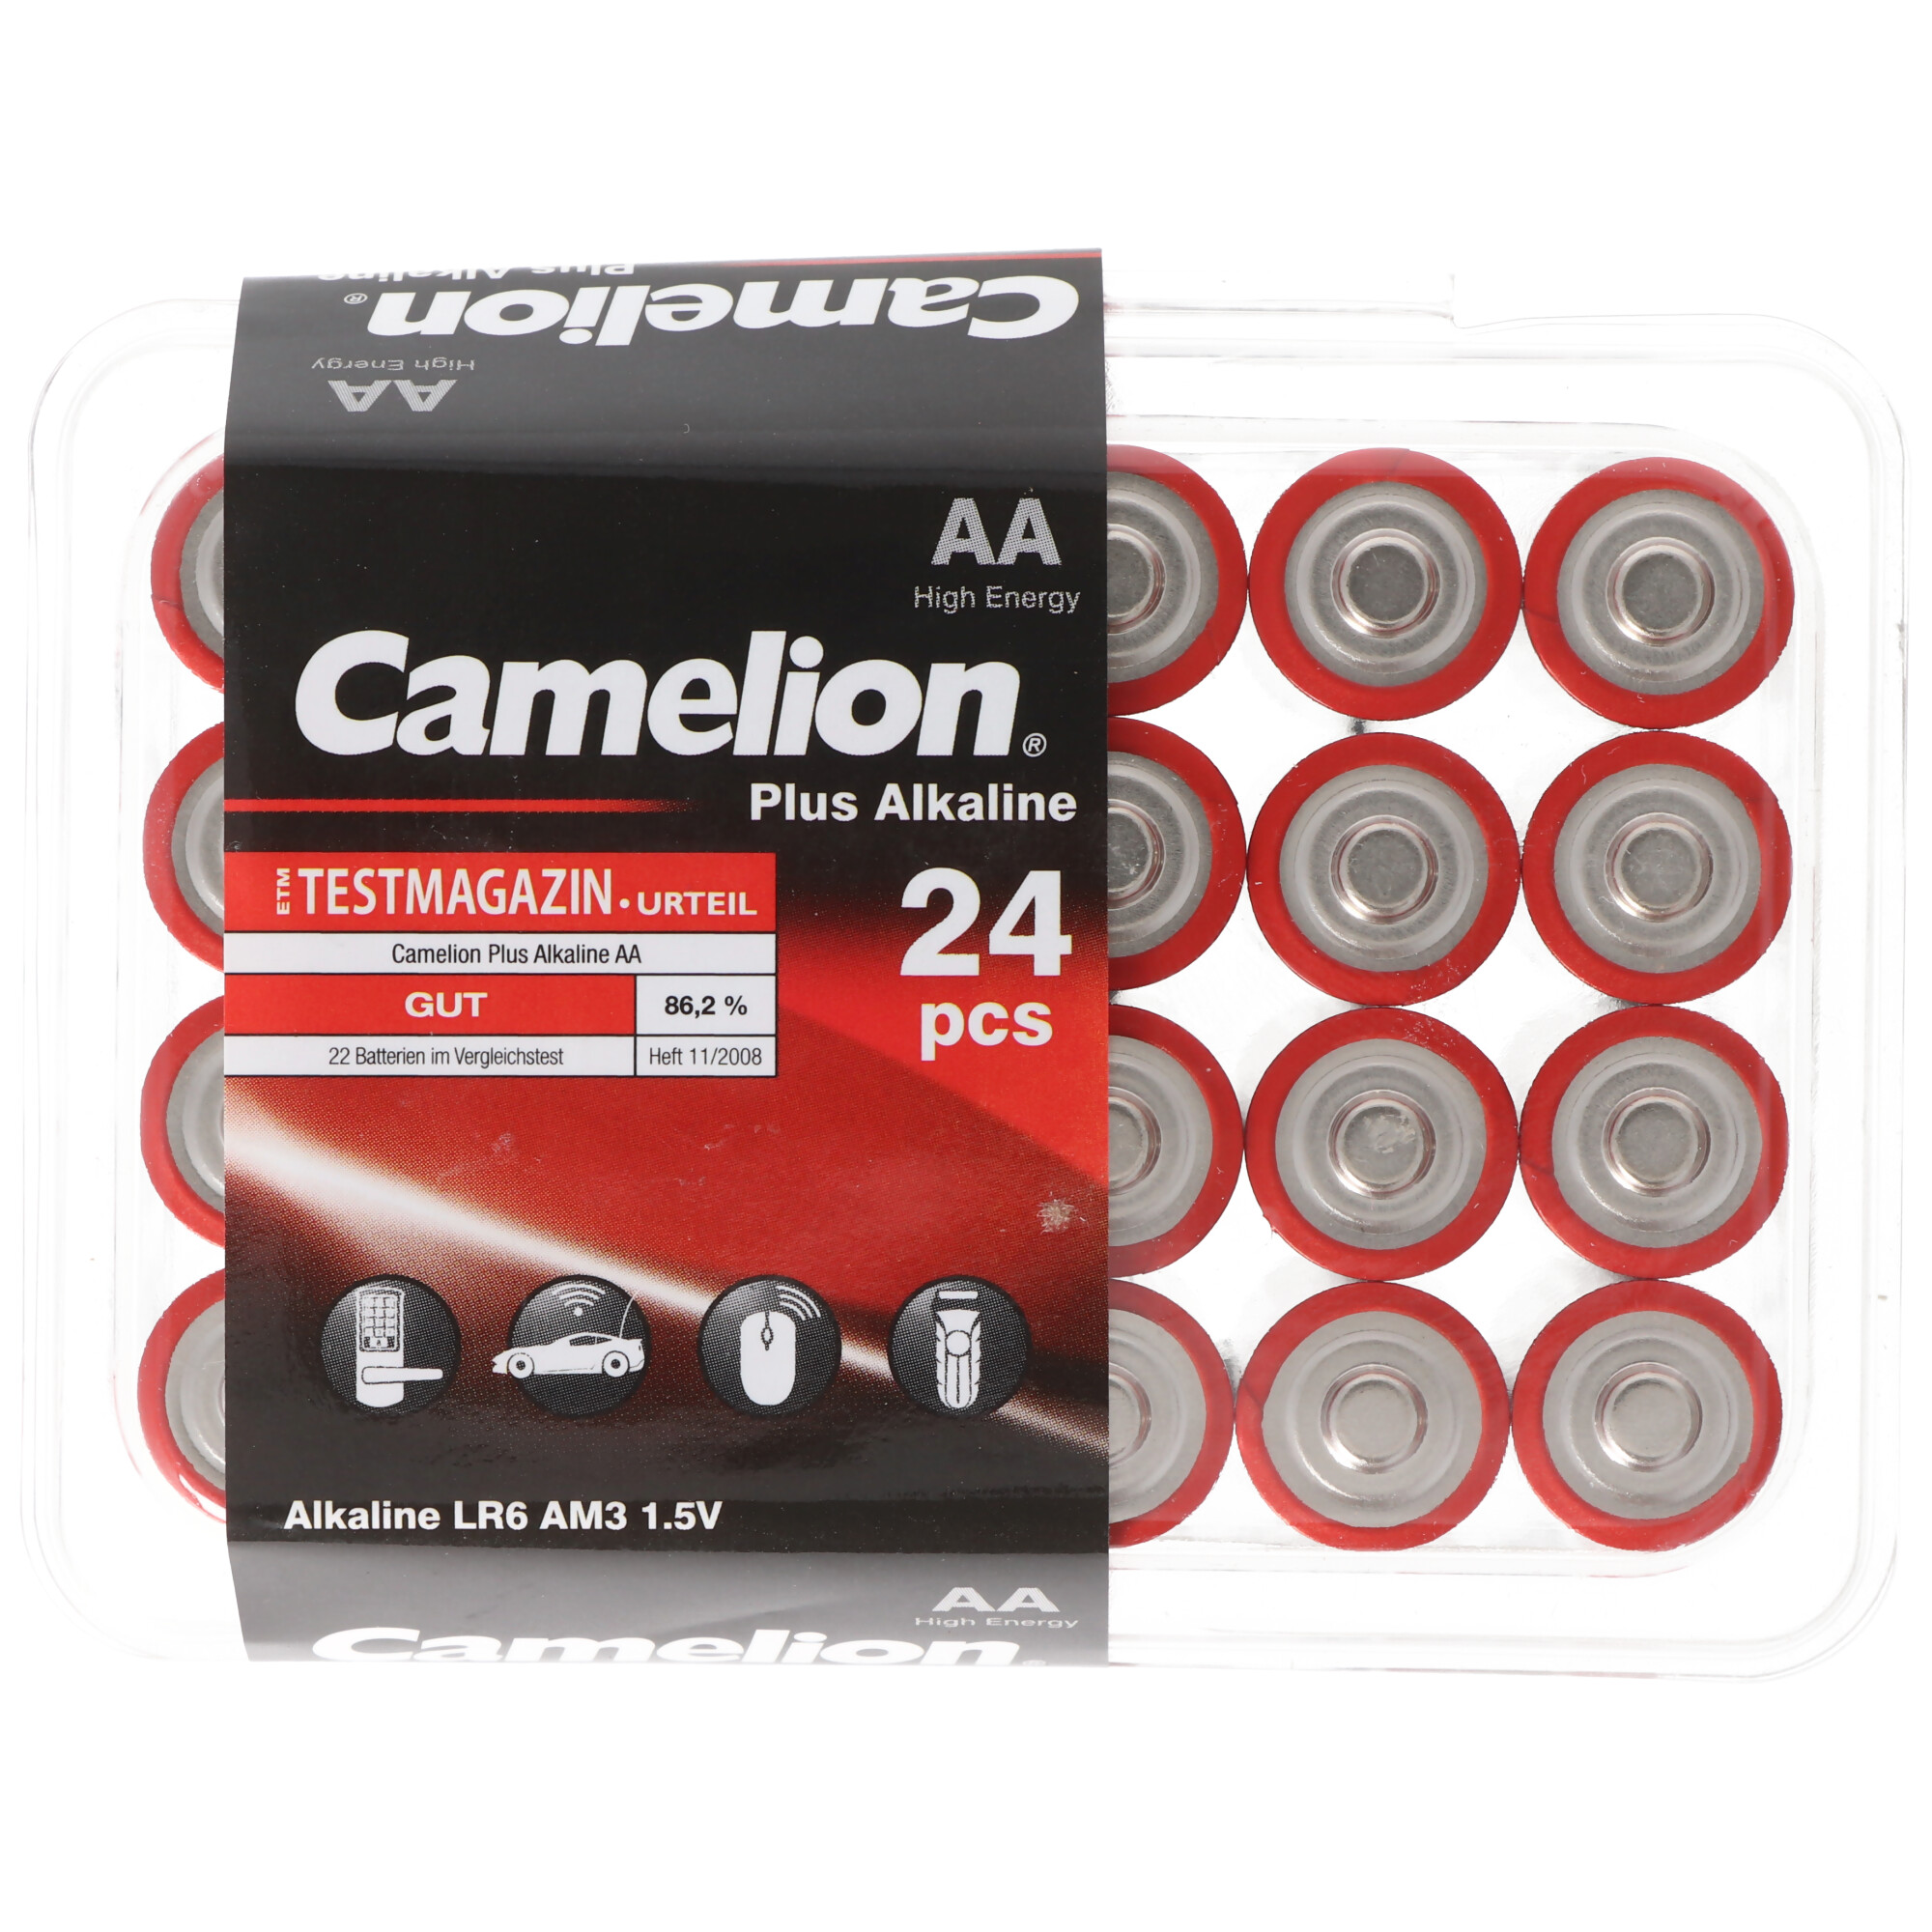 Camelion Plus Alkaline AA Batterien, 24 Stück in praktischer Aufbewahrungsbox